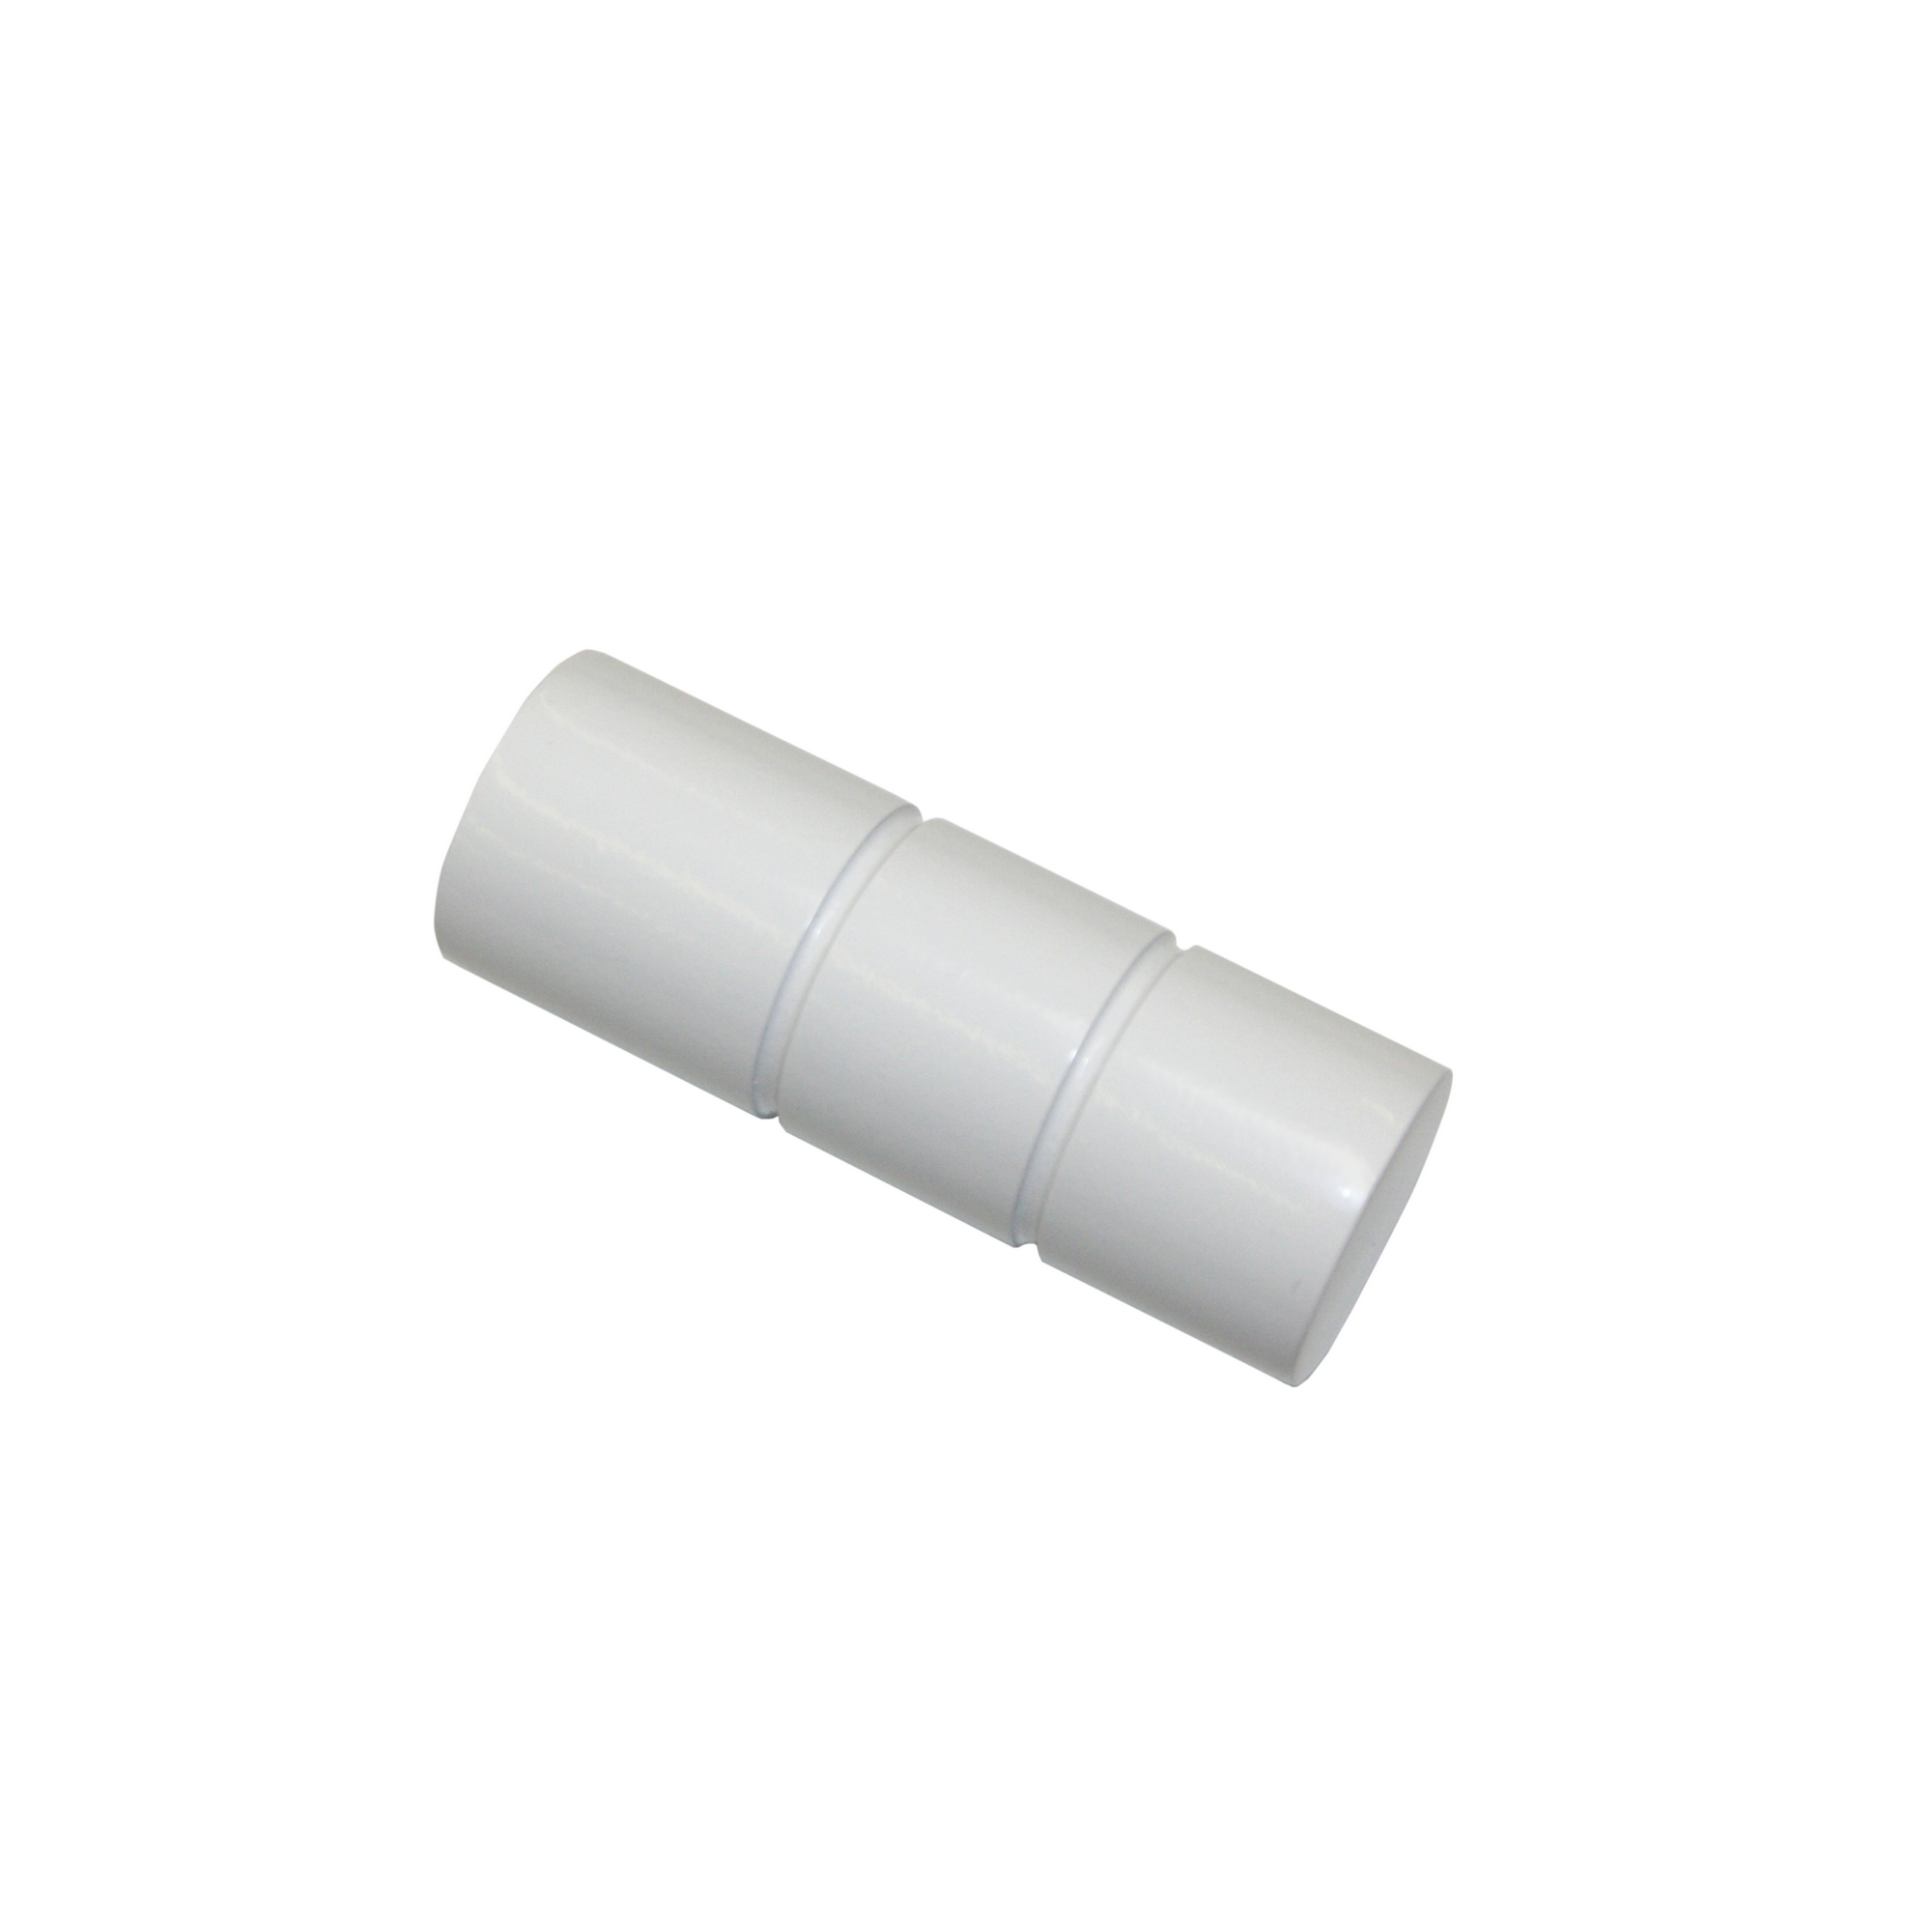 Endknopf für Gardinenstange 'Sol' zylinderförmig Ø 16 mm weiß, 2er-Pack + product picture